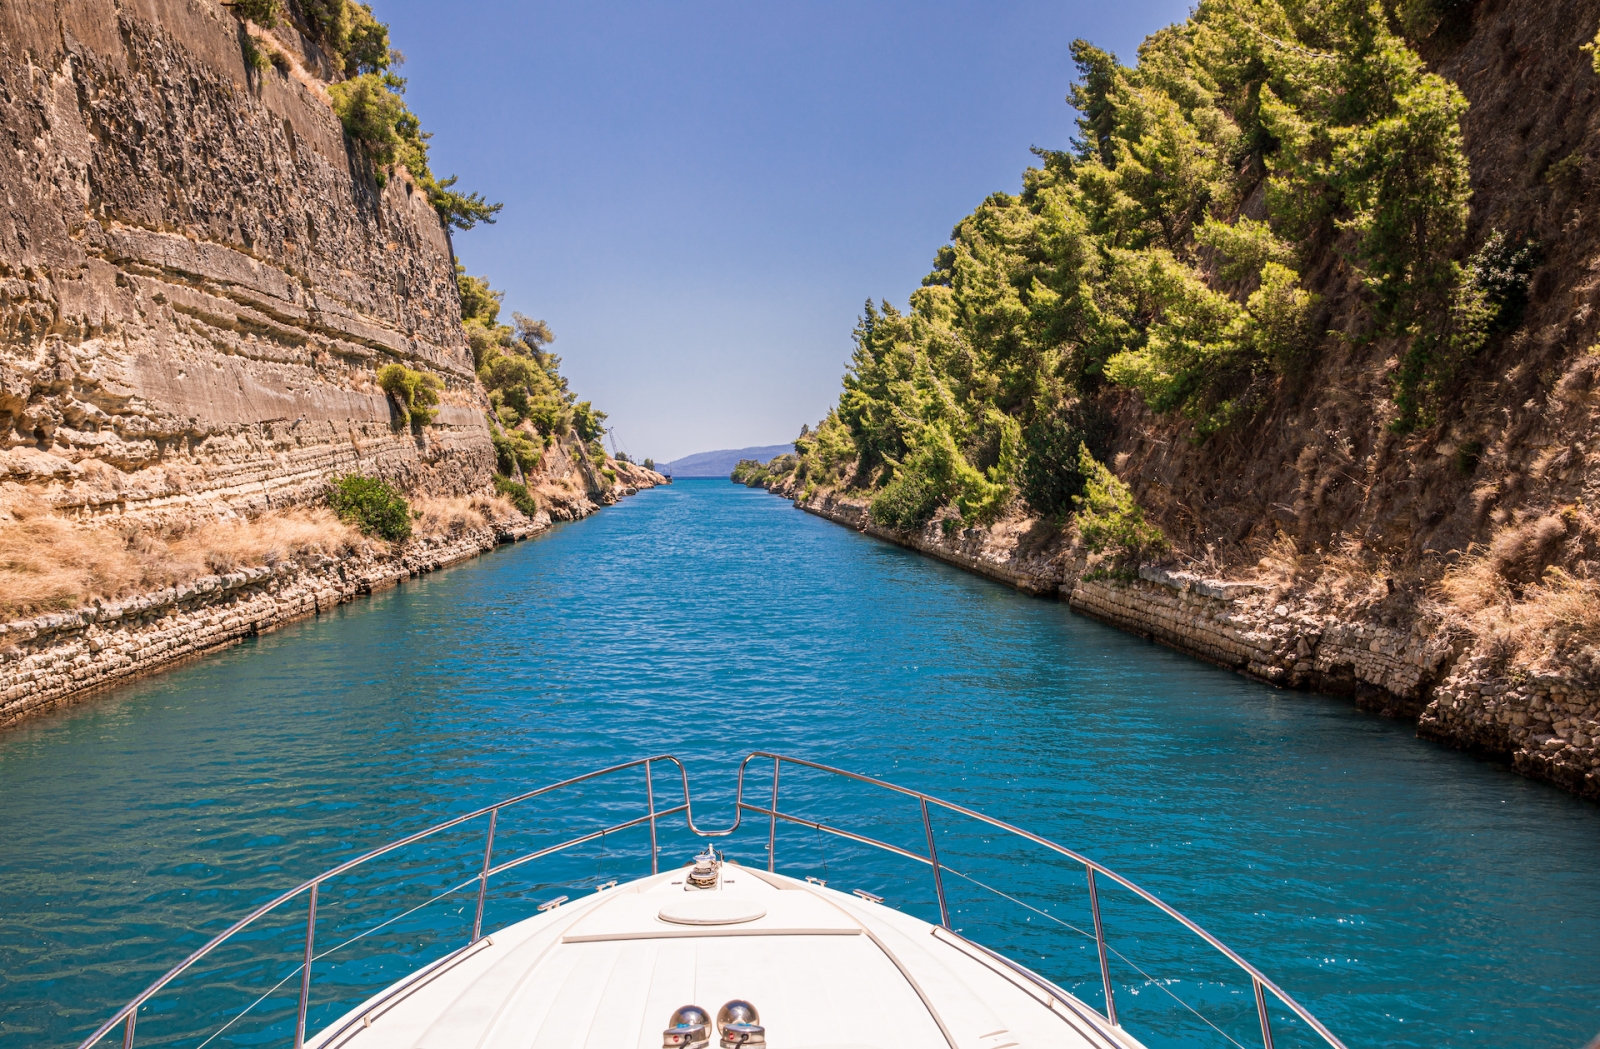 Прохождение Коринфского канала на яхте, Греция.  Коринфский канал соединяет Коринфский залив с Сароническим заливом в Эгейском море.